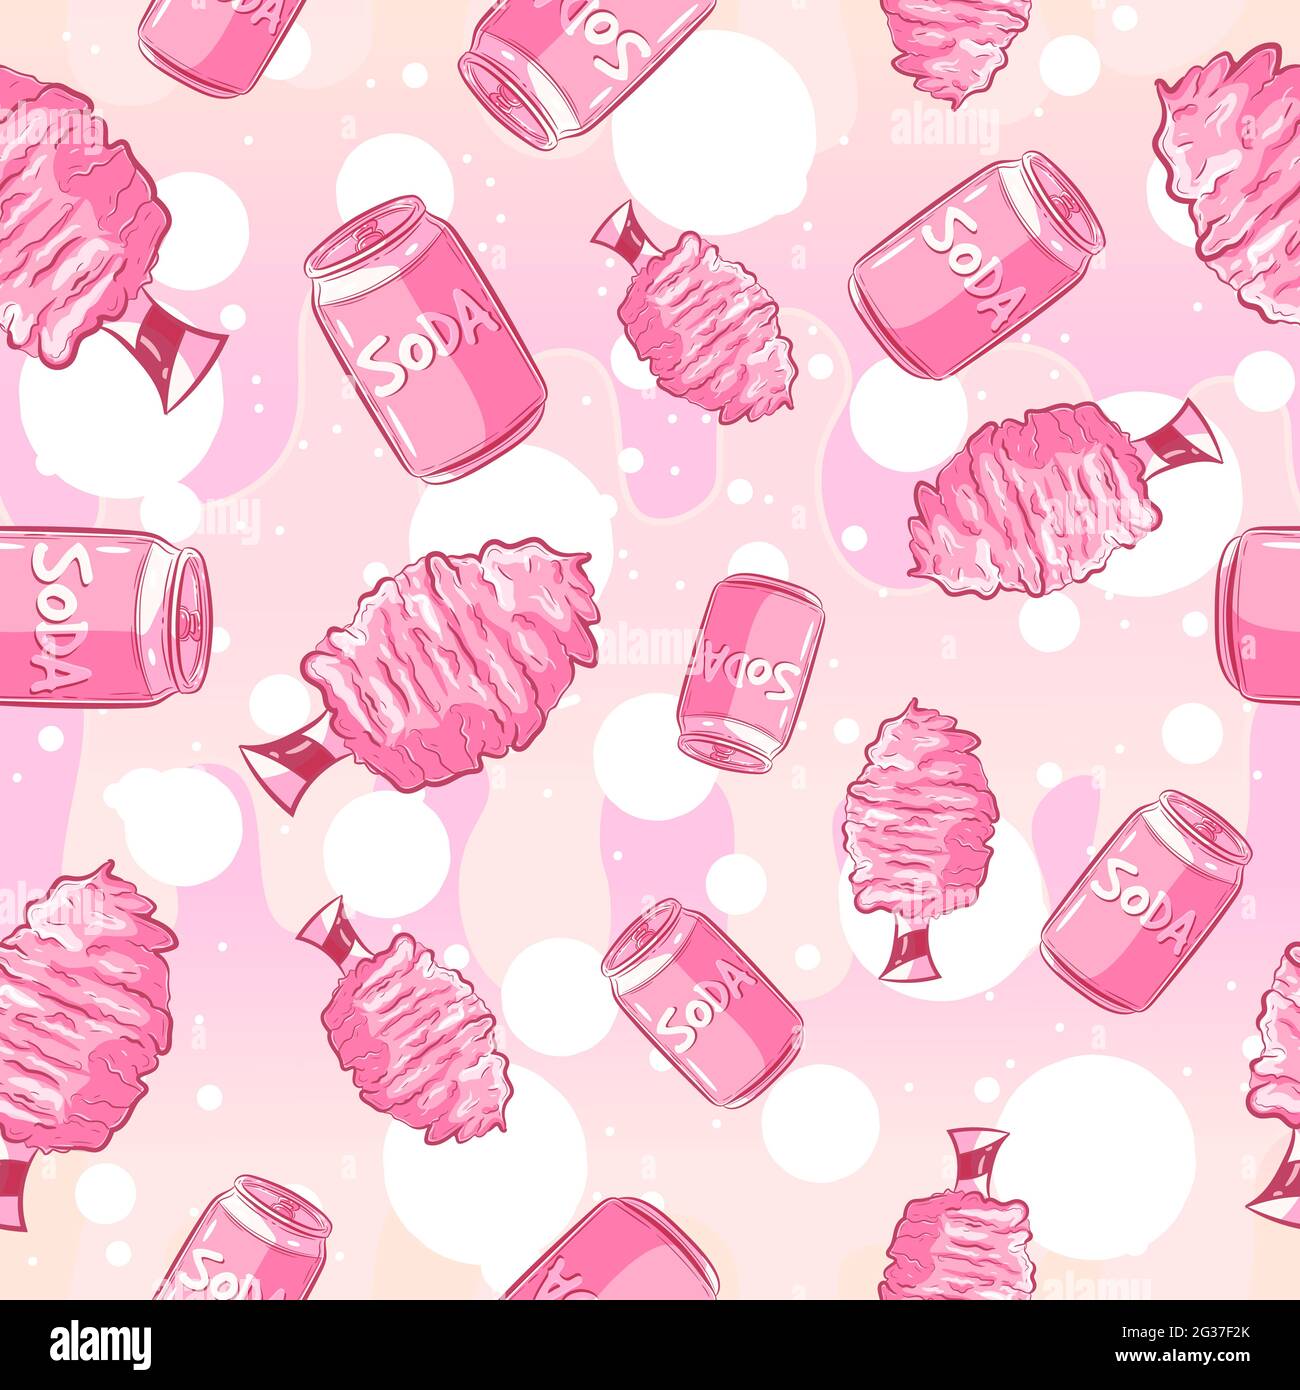 Kawaii Nahtloses Muster mit Limonadendosen und Zuckerwatte. Rosafarbener, girly-repetitiver Hintergrund mit sommerlichen Festspielen und Getränken. Niedliche Vektorgrafiken Stock Vektor